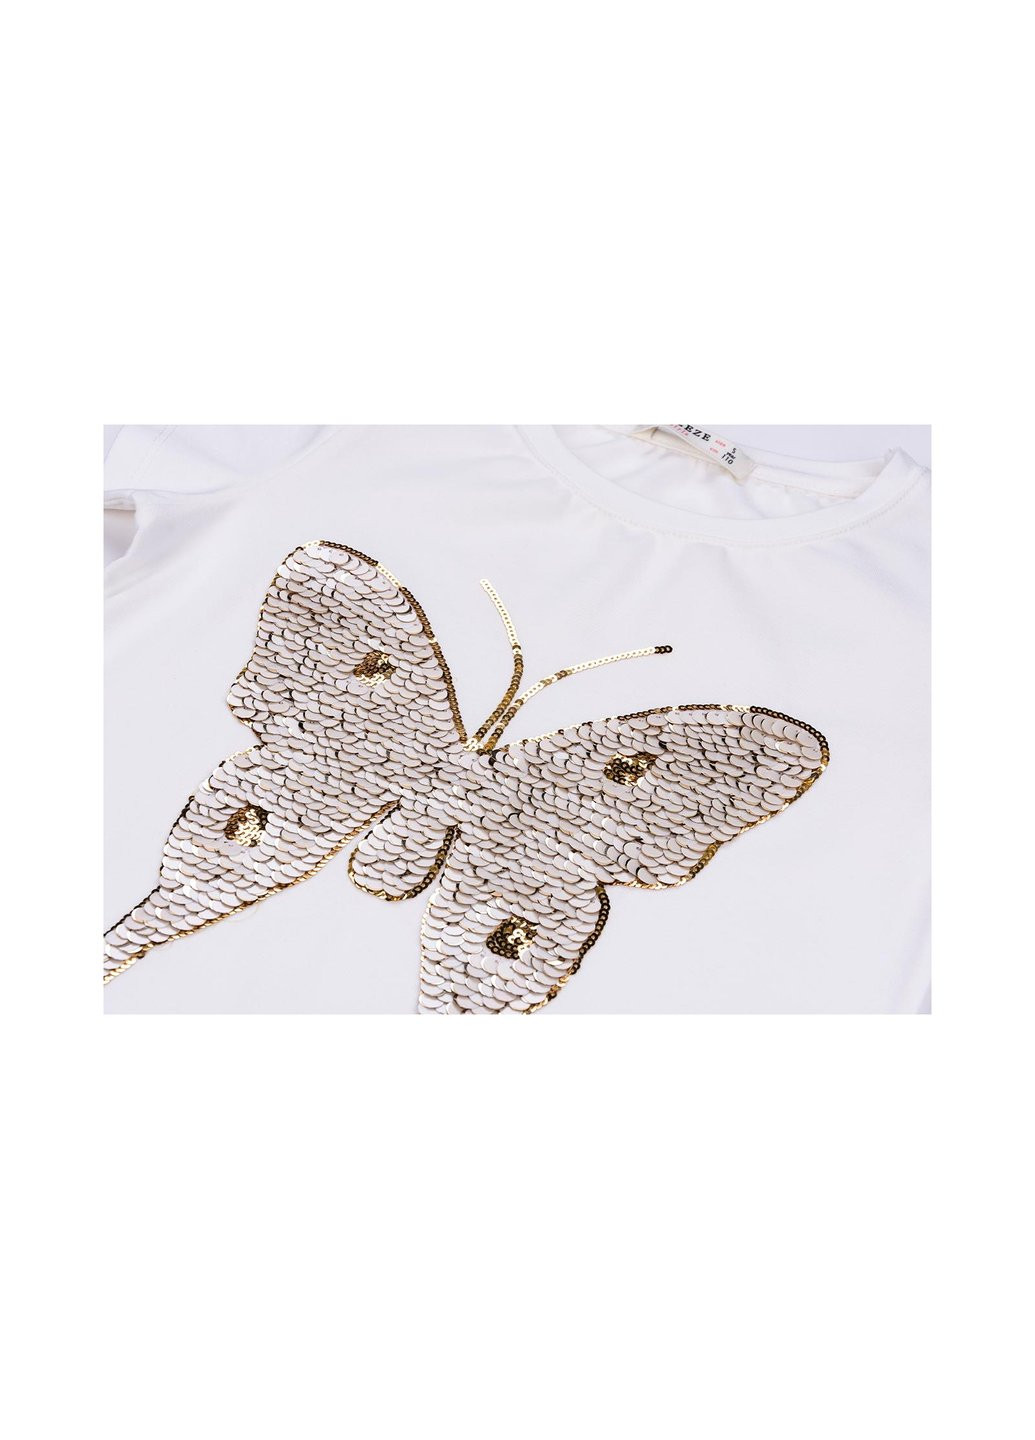 Комбінована футболка дитяча з метеликом з паєток (11055-140g-cream) Breeze